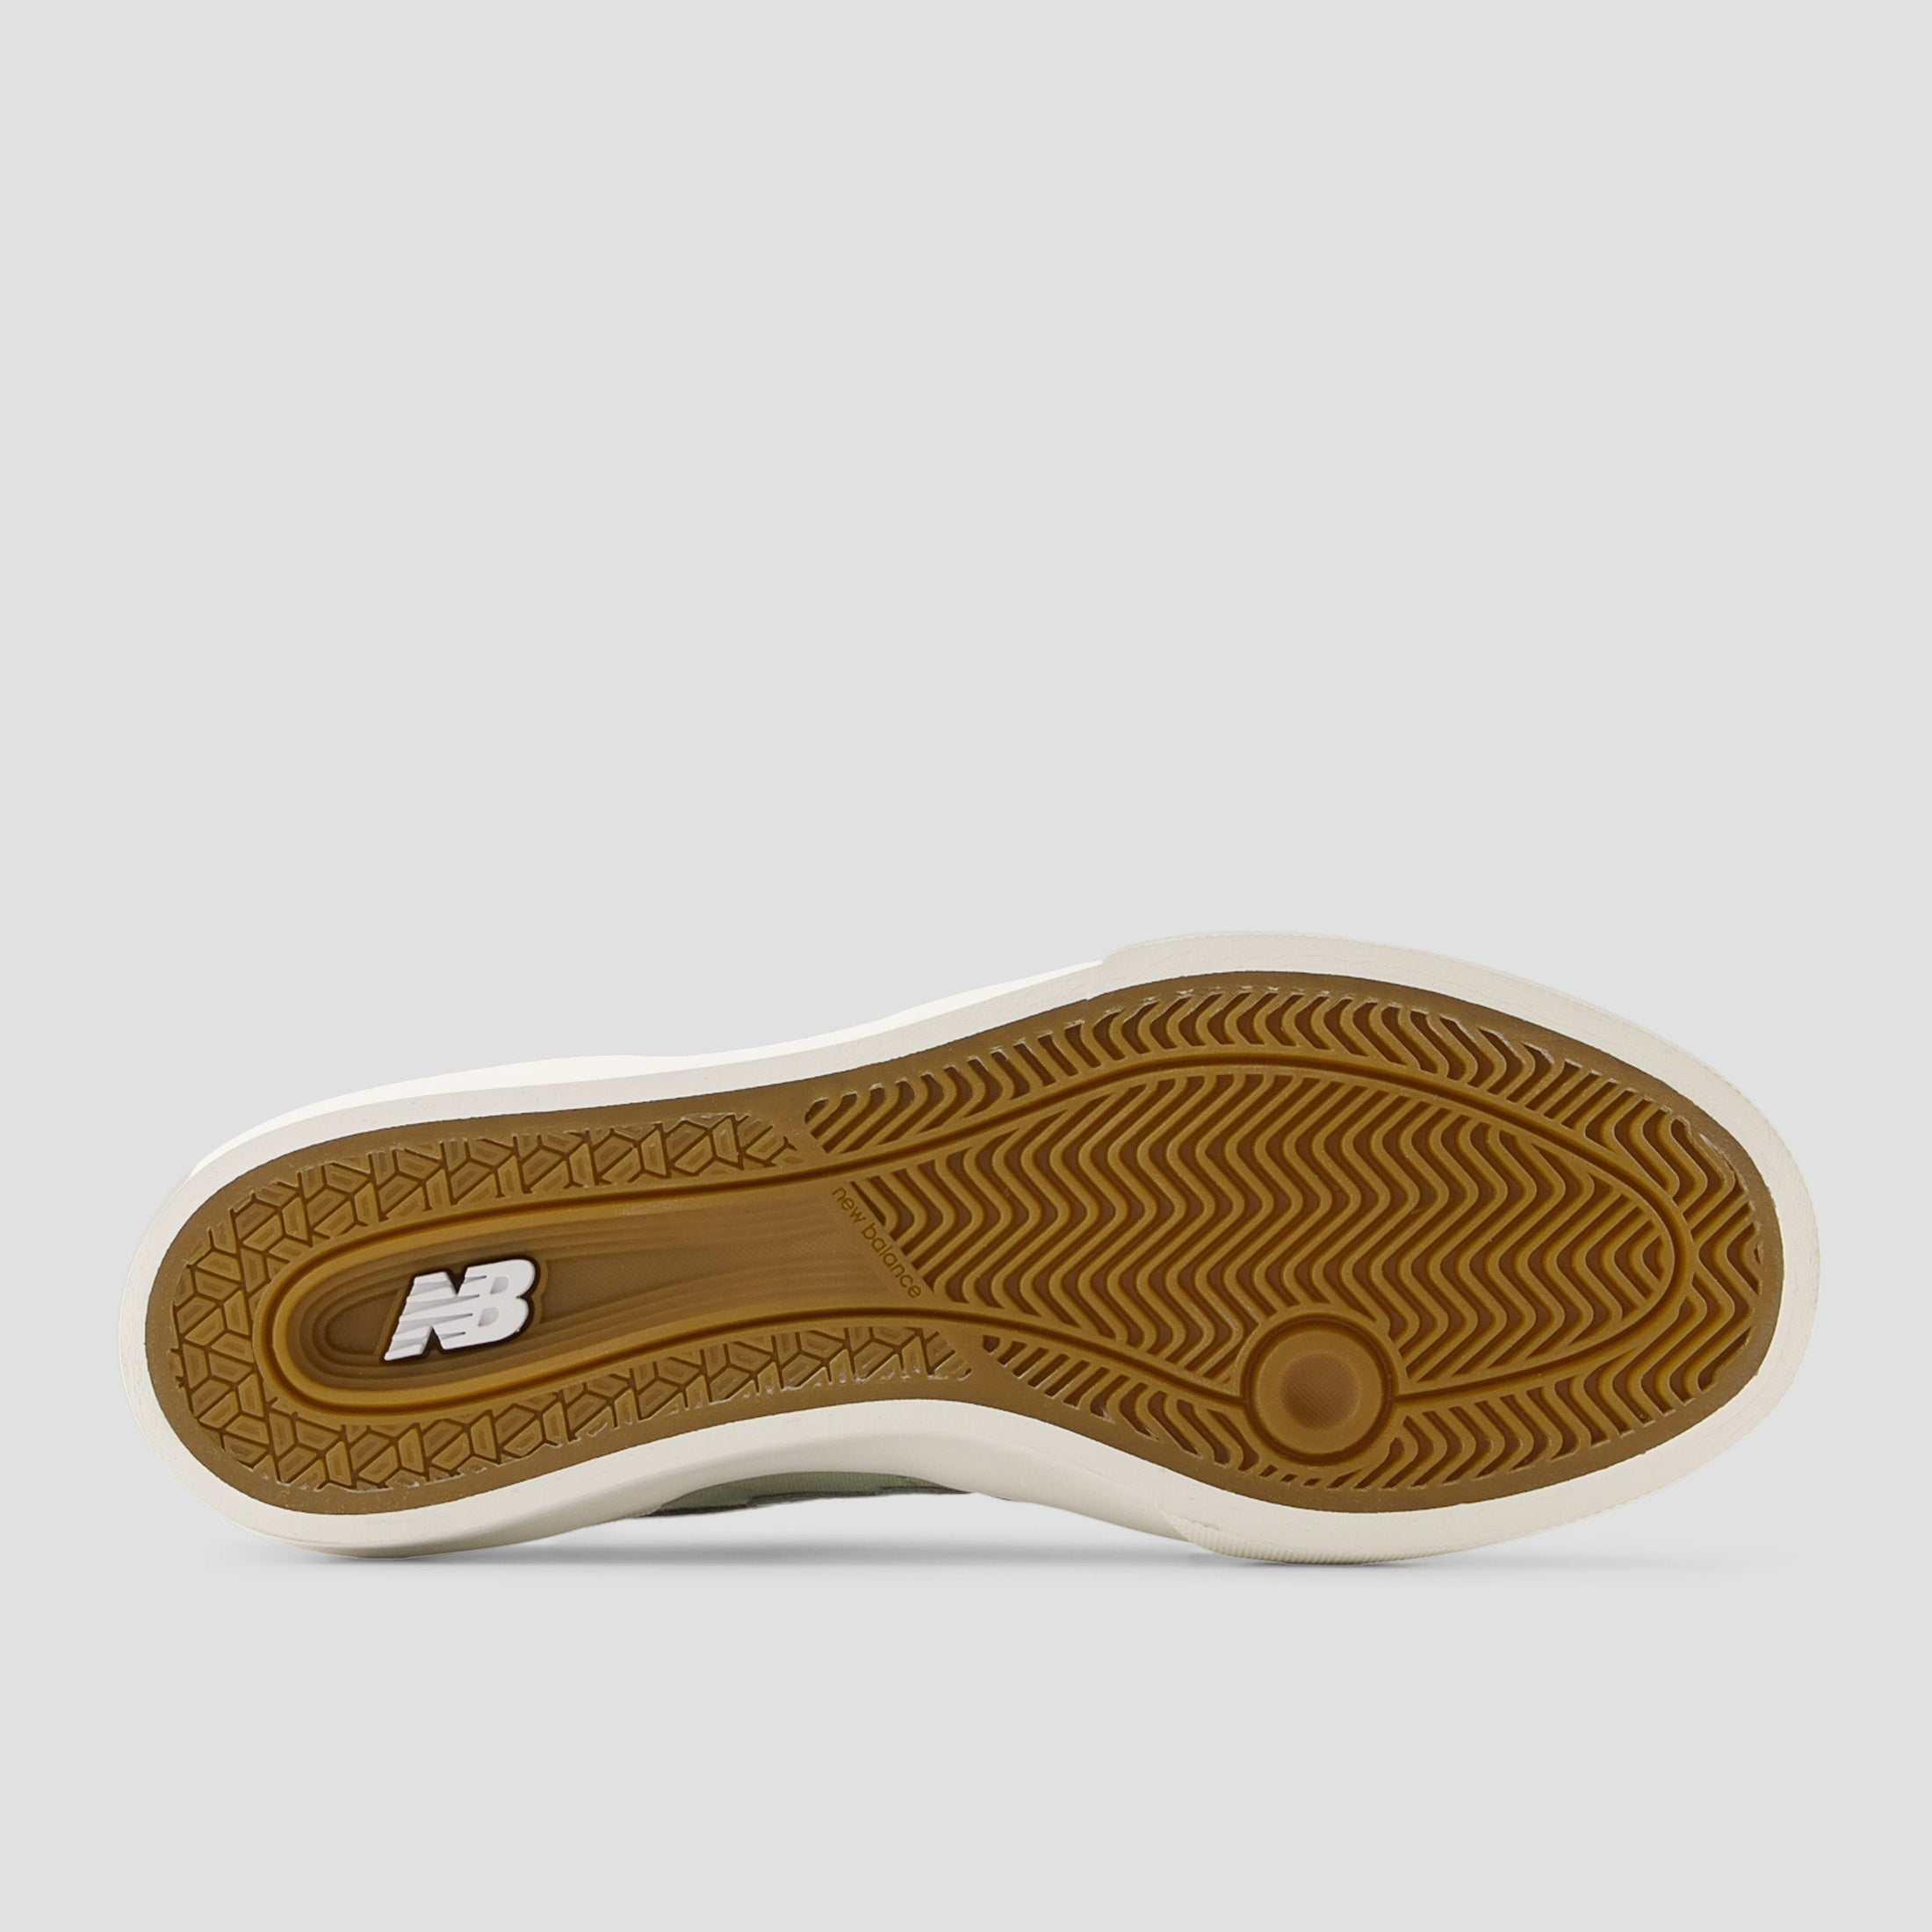 New Balance 272 Skate Shoes Dark Camo / Olivine